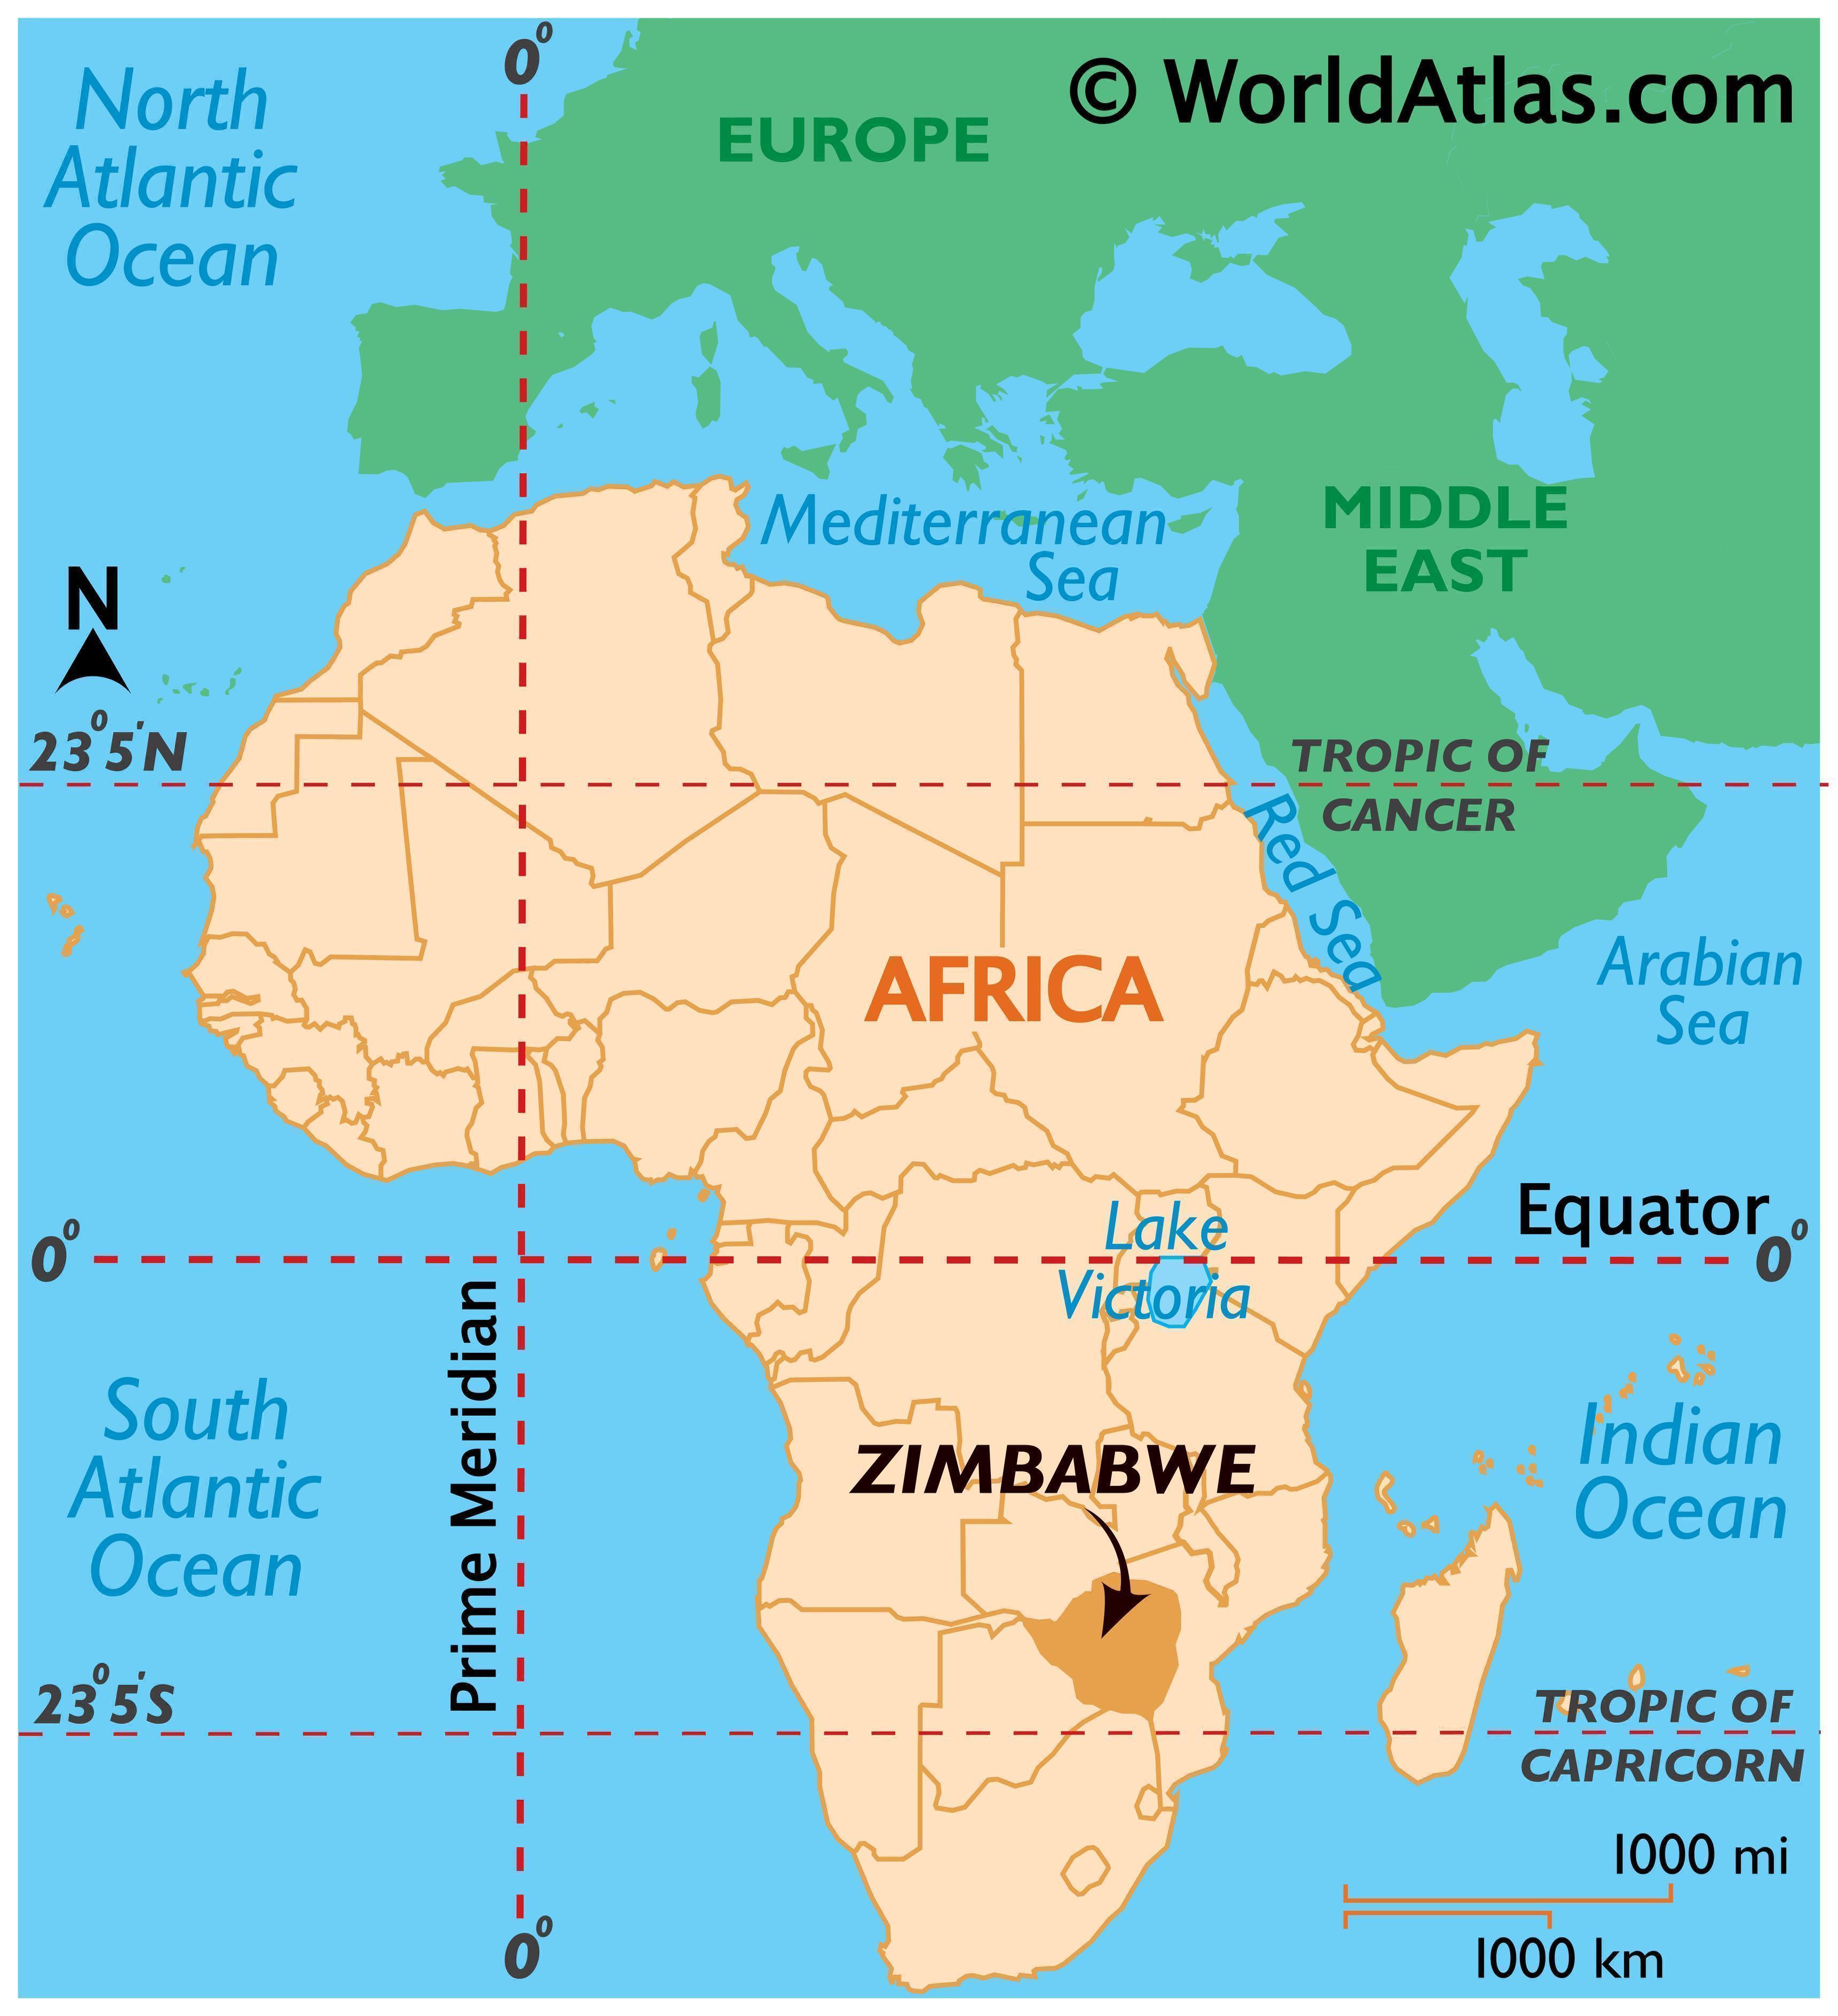 zimbabwe on map of africa Zimbabwe Map Geography Of Zimbabwe Map Of Zimbabwe Worldatlas Com zimbabwe on map of africa